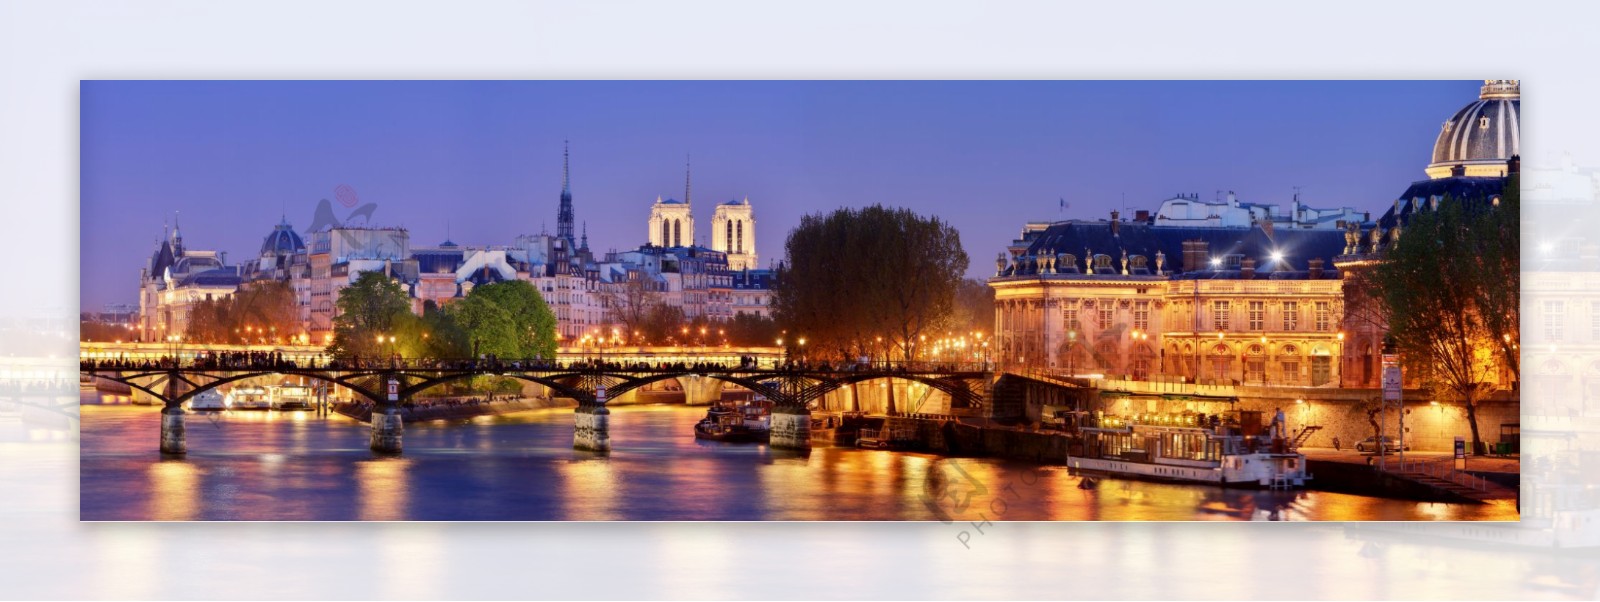 法国巴黎夜景图片